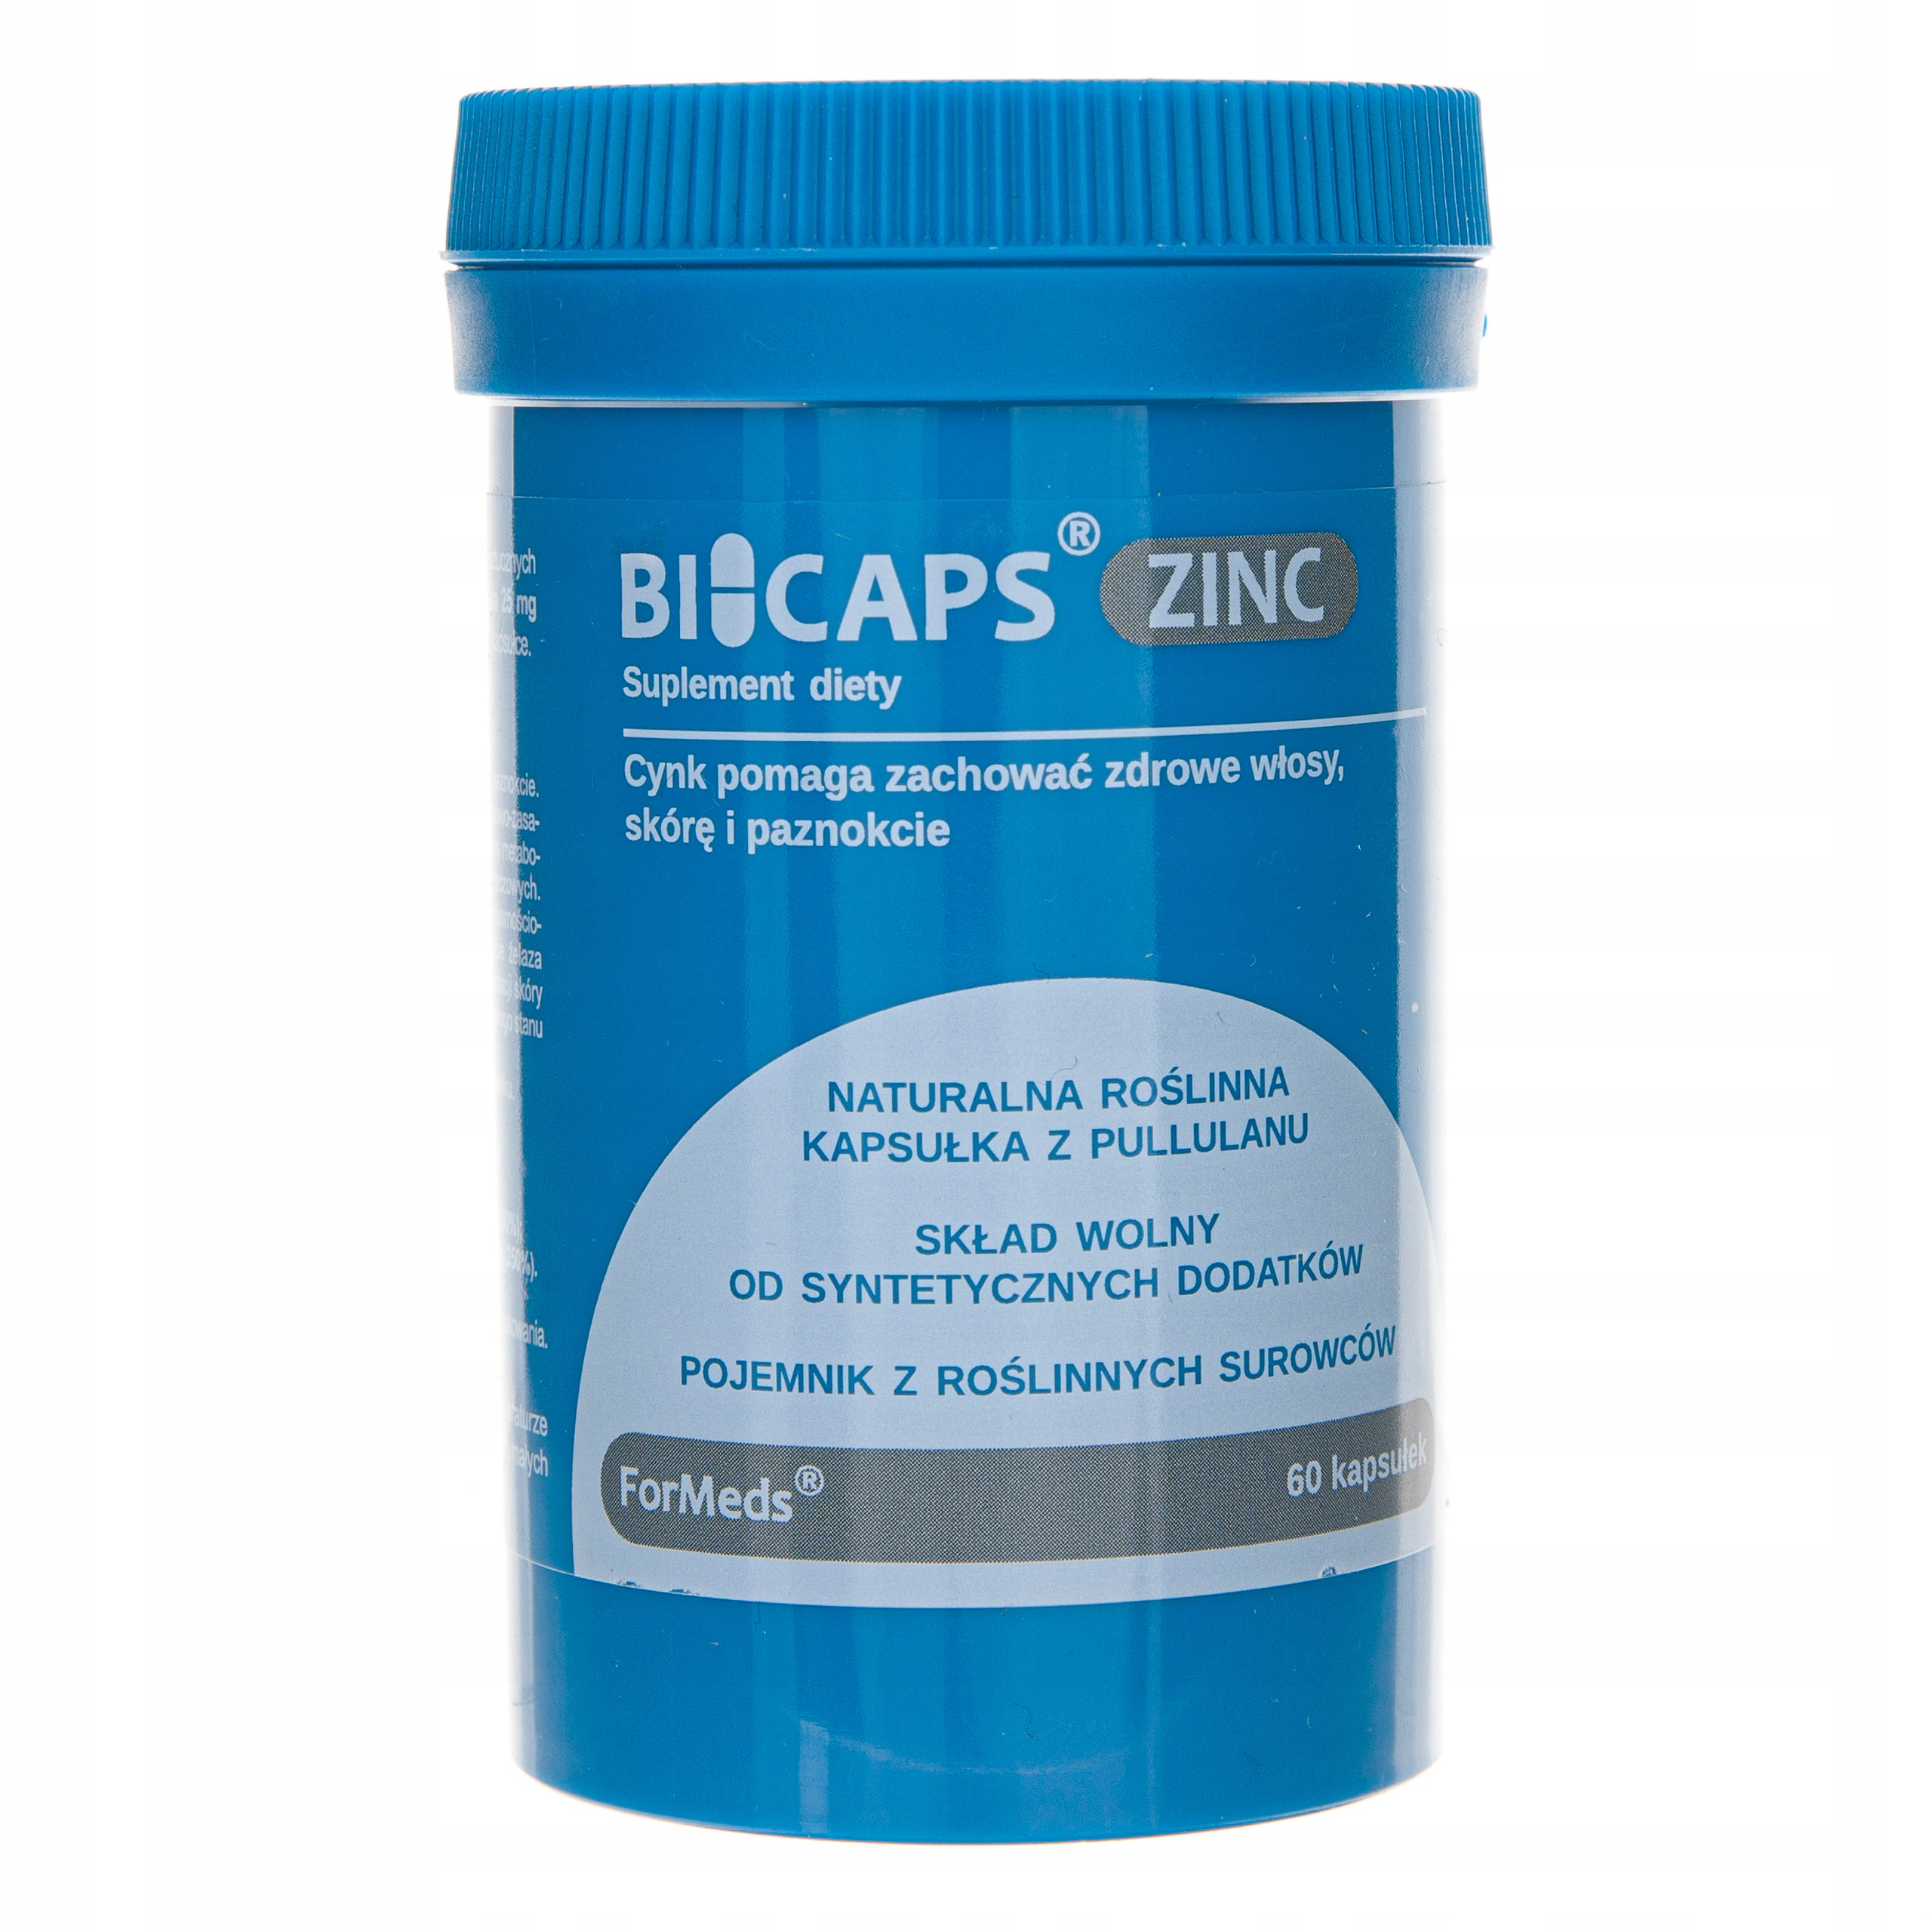 Formeds bicaps zinc cytrynian cynk przyswajalny.